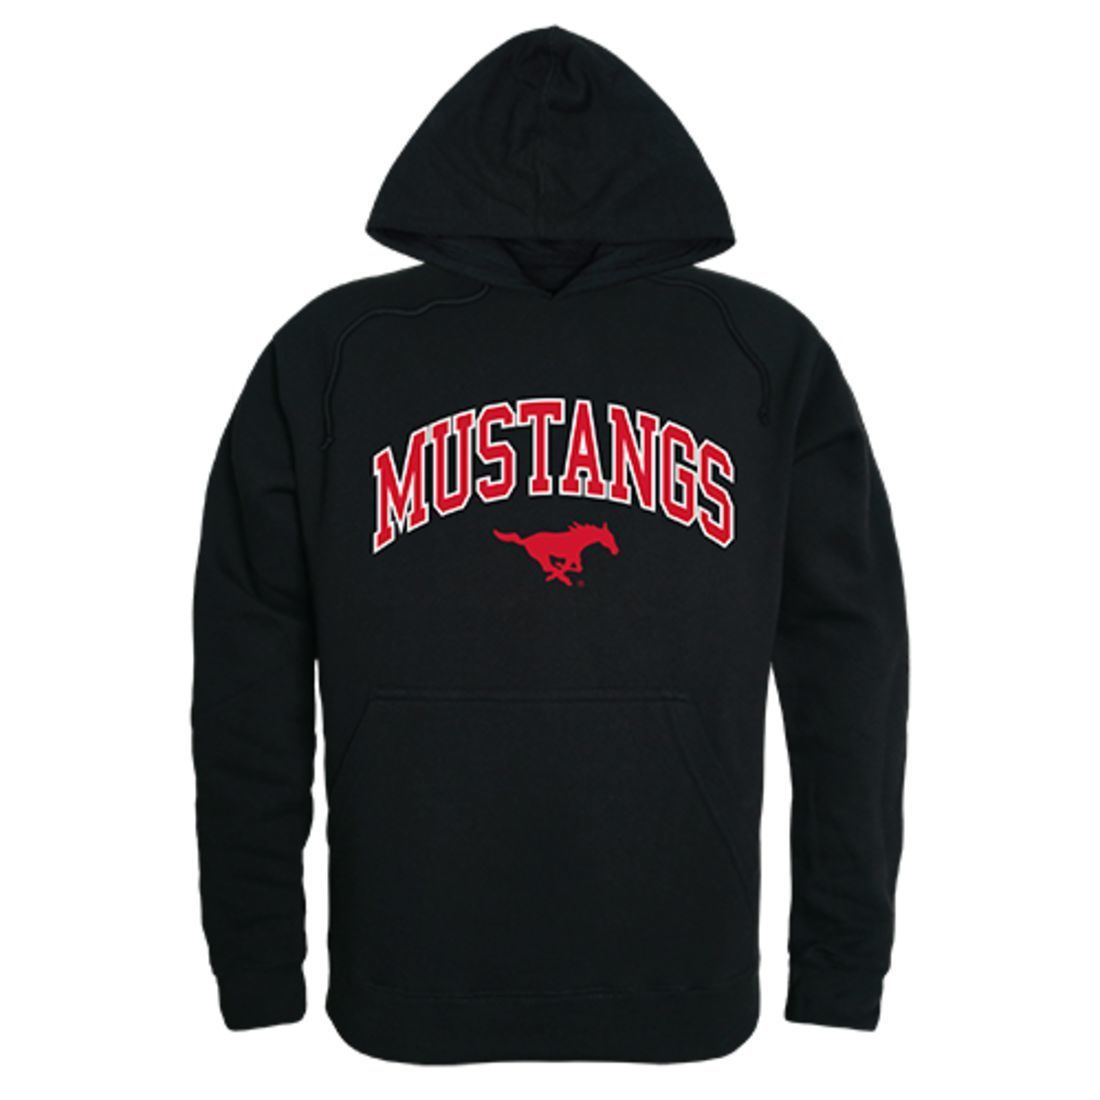 Southern Methodist University Mustangs Campus Hoodie Sweatshirt Black-Campus-Wardrobe